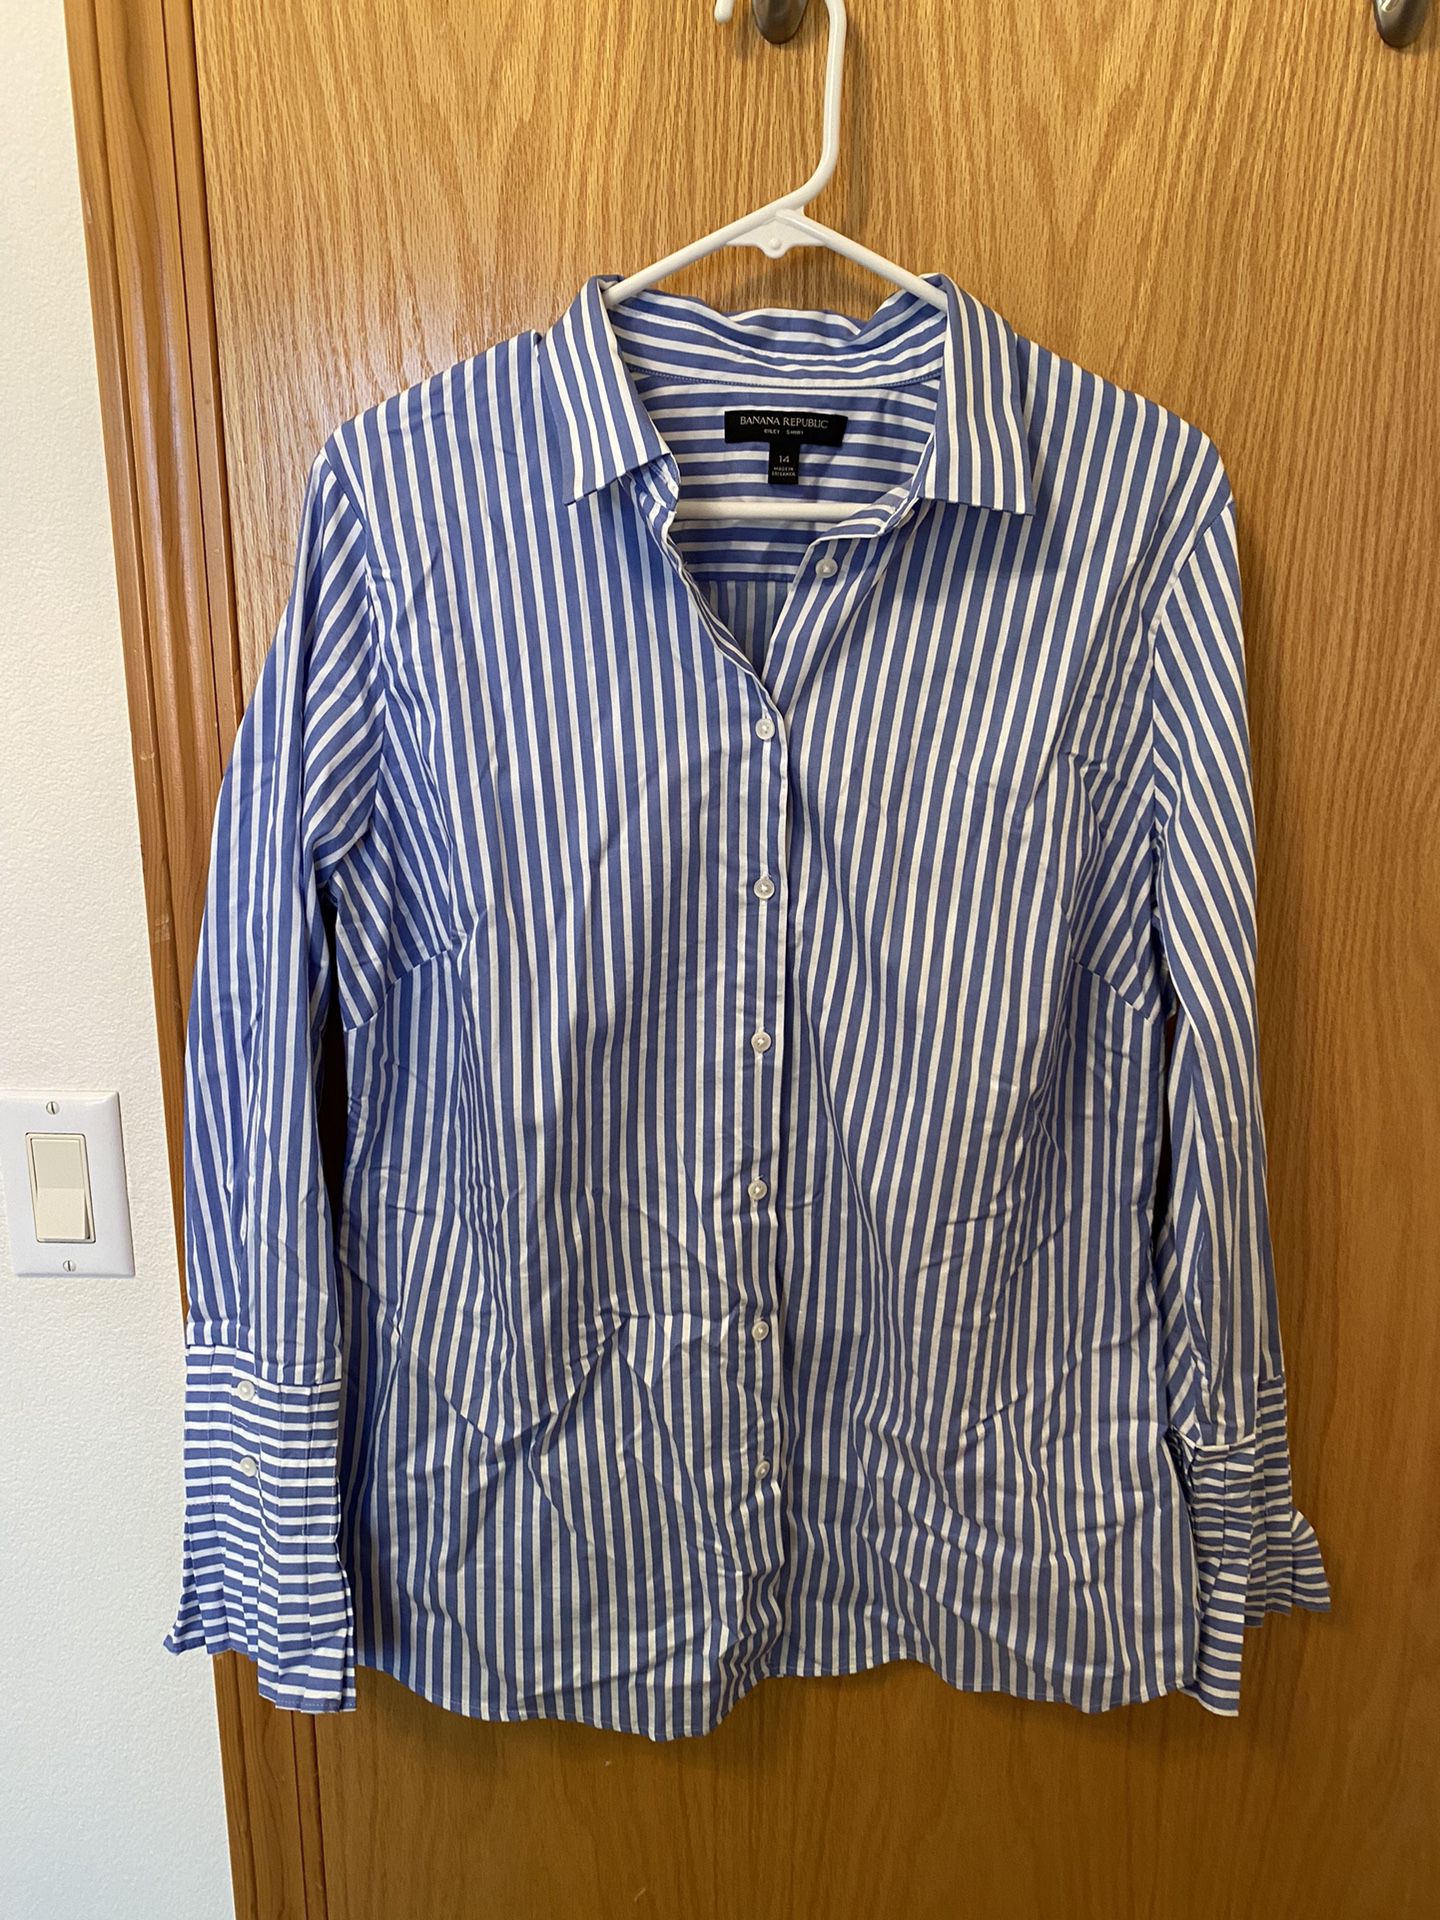 Nwot! Banana Republic size 14 blue & white striped button down shirt